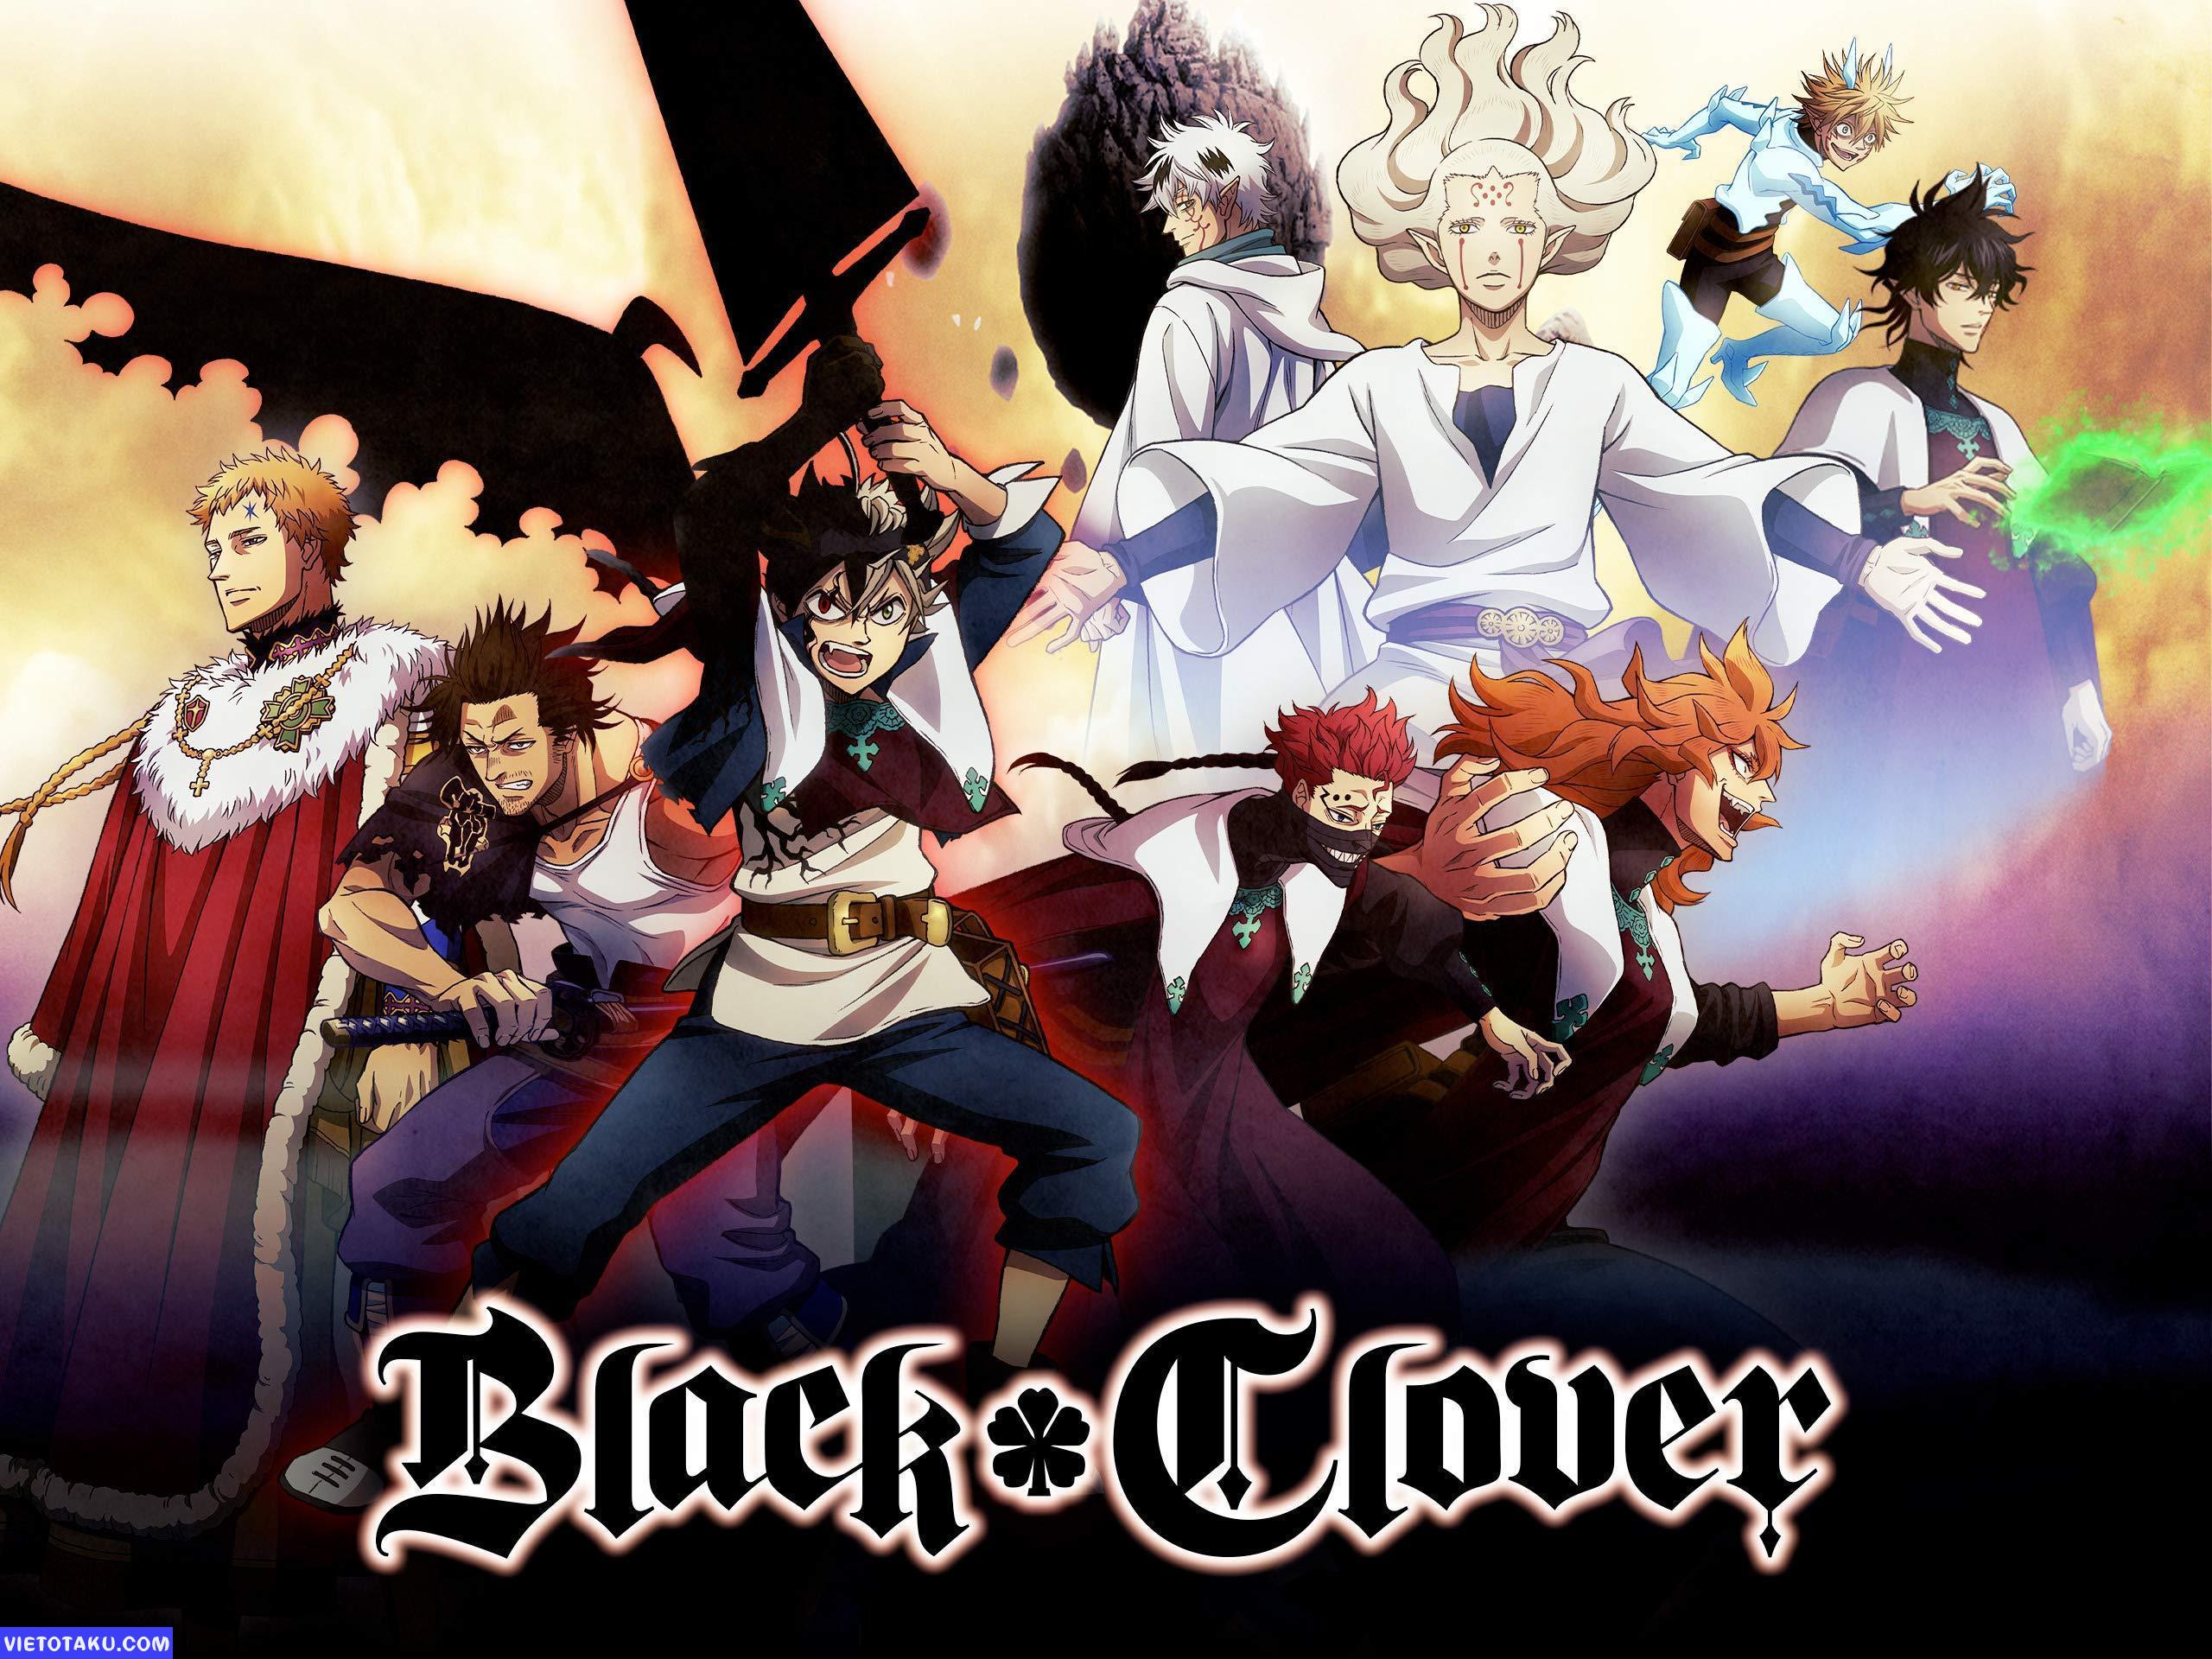 Thêm một bộ manga đình đám sẽ có game mobile lần này là Black Clover